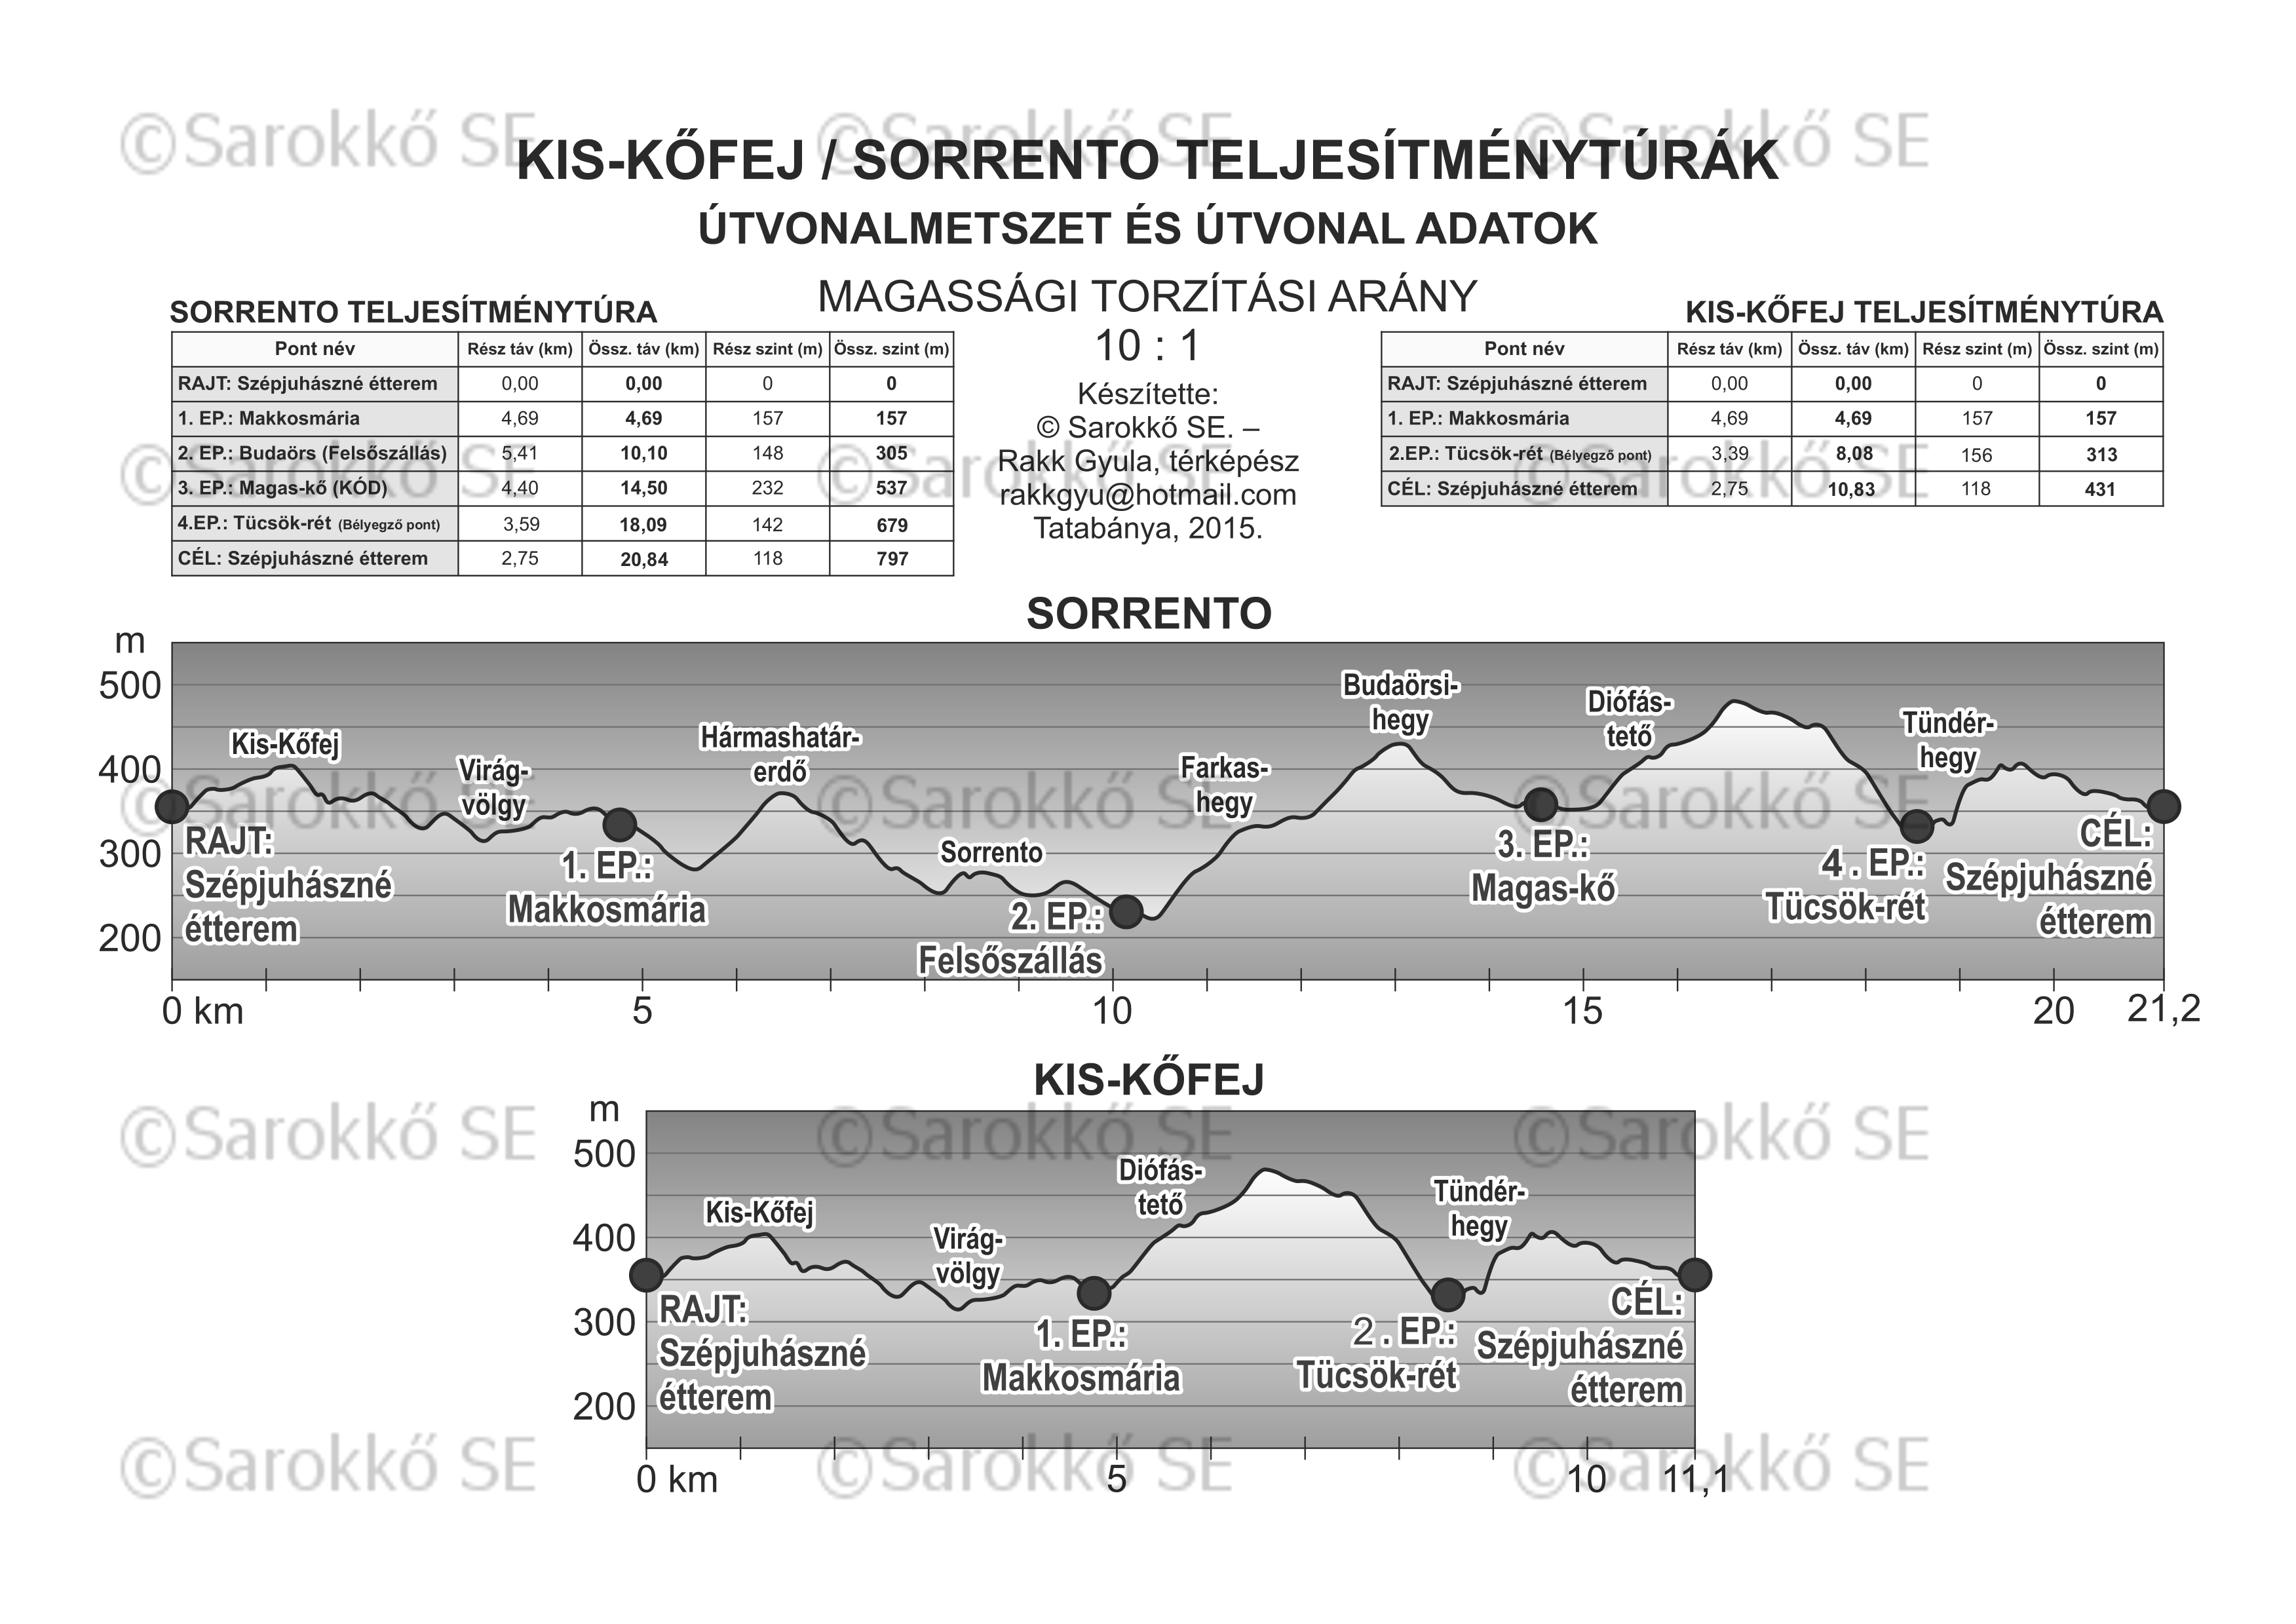 A IV.Sorrento/ Kis-Kőfej teljesítménytúrák szürkeárnyalatos útvonalmetszete